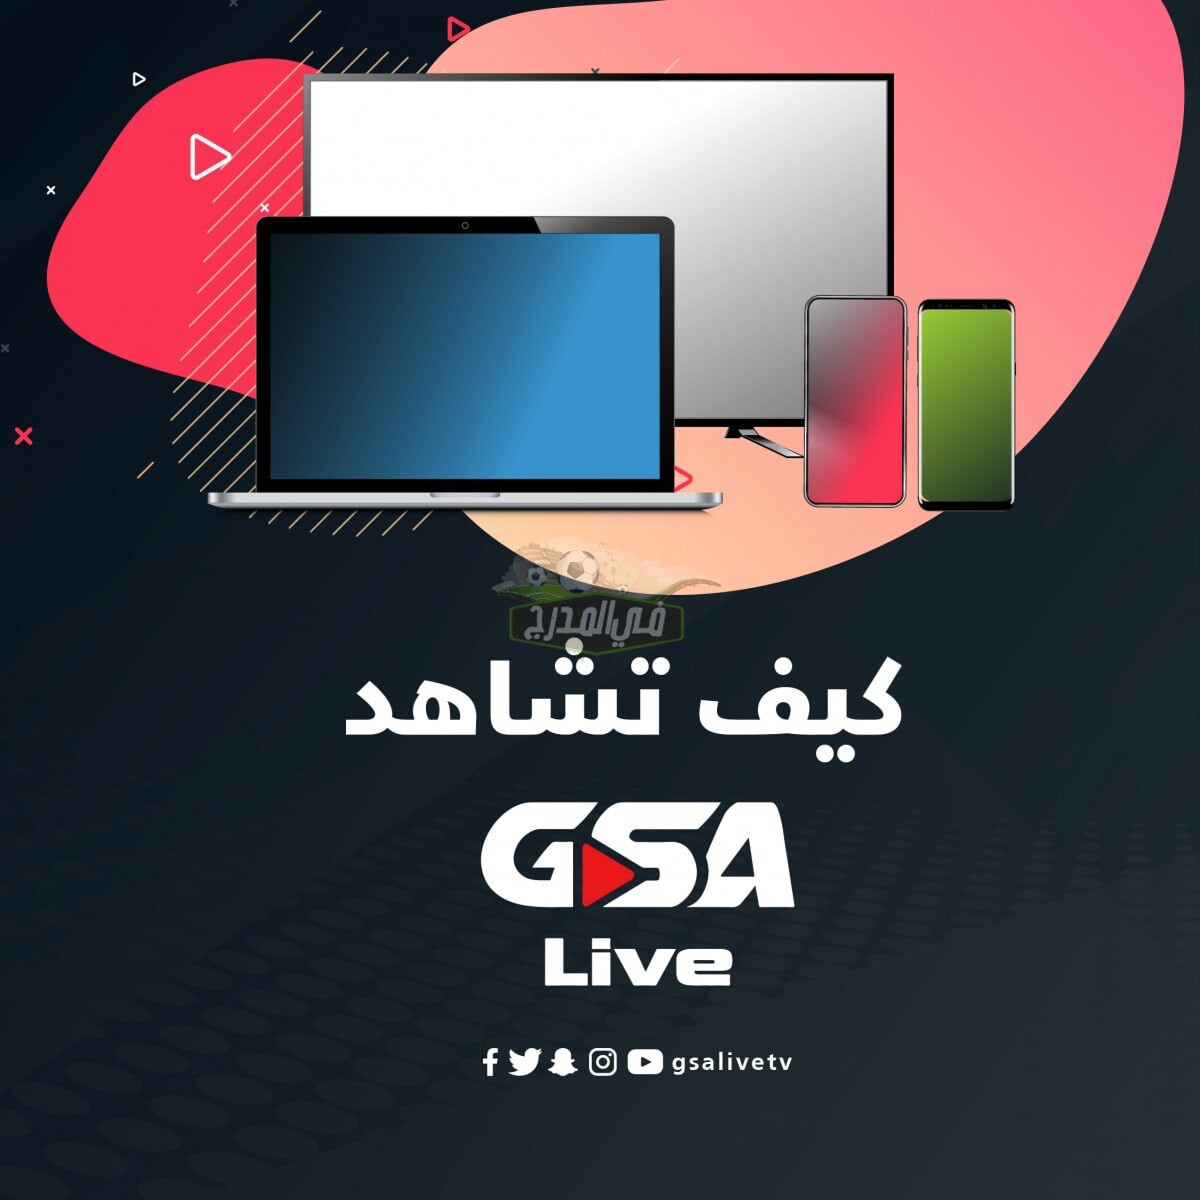 كيفية مشاهدة منصة GSA live الناقلة لمباريات دوري أبطال آسيا على أجهزة iOS وapple tv وأندرويد Android.. كيف تشاهد منصة منصة GSA